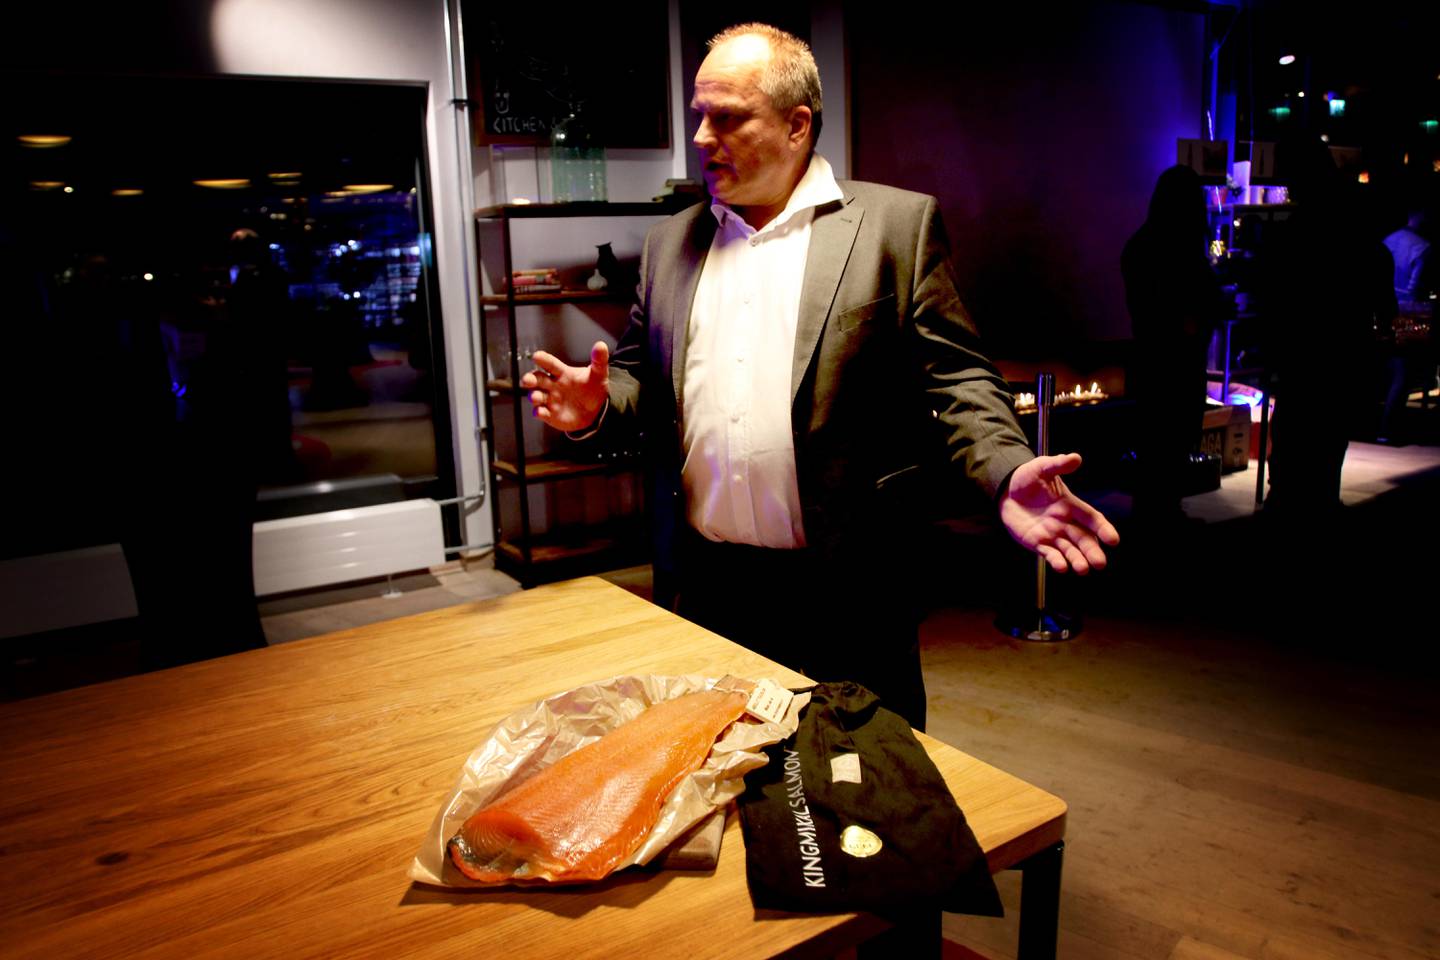 Mikal O. Viga i Mikals Laks vant under årets prisutdeling av Det Norske Måltid. Hans bidrag i år var Absolut Tradisjon, en røykelaks røykt på tradisjonelt vis.